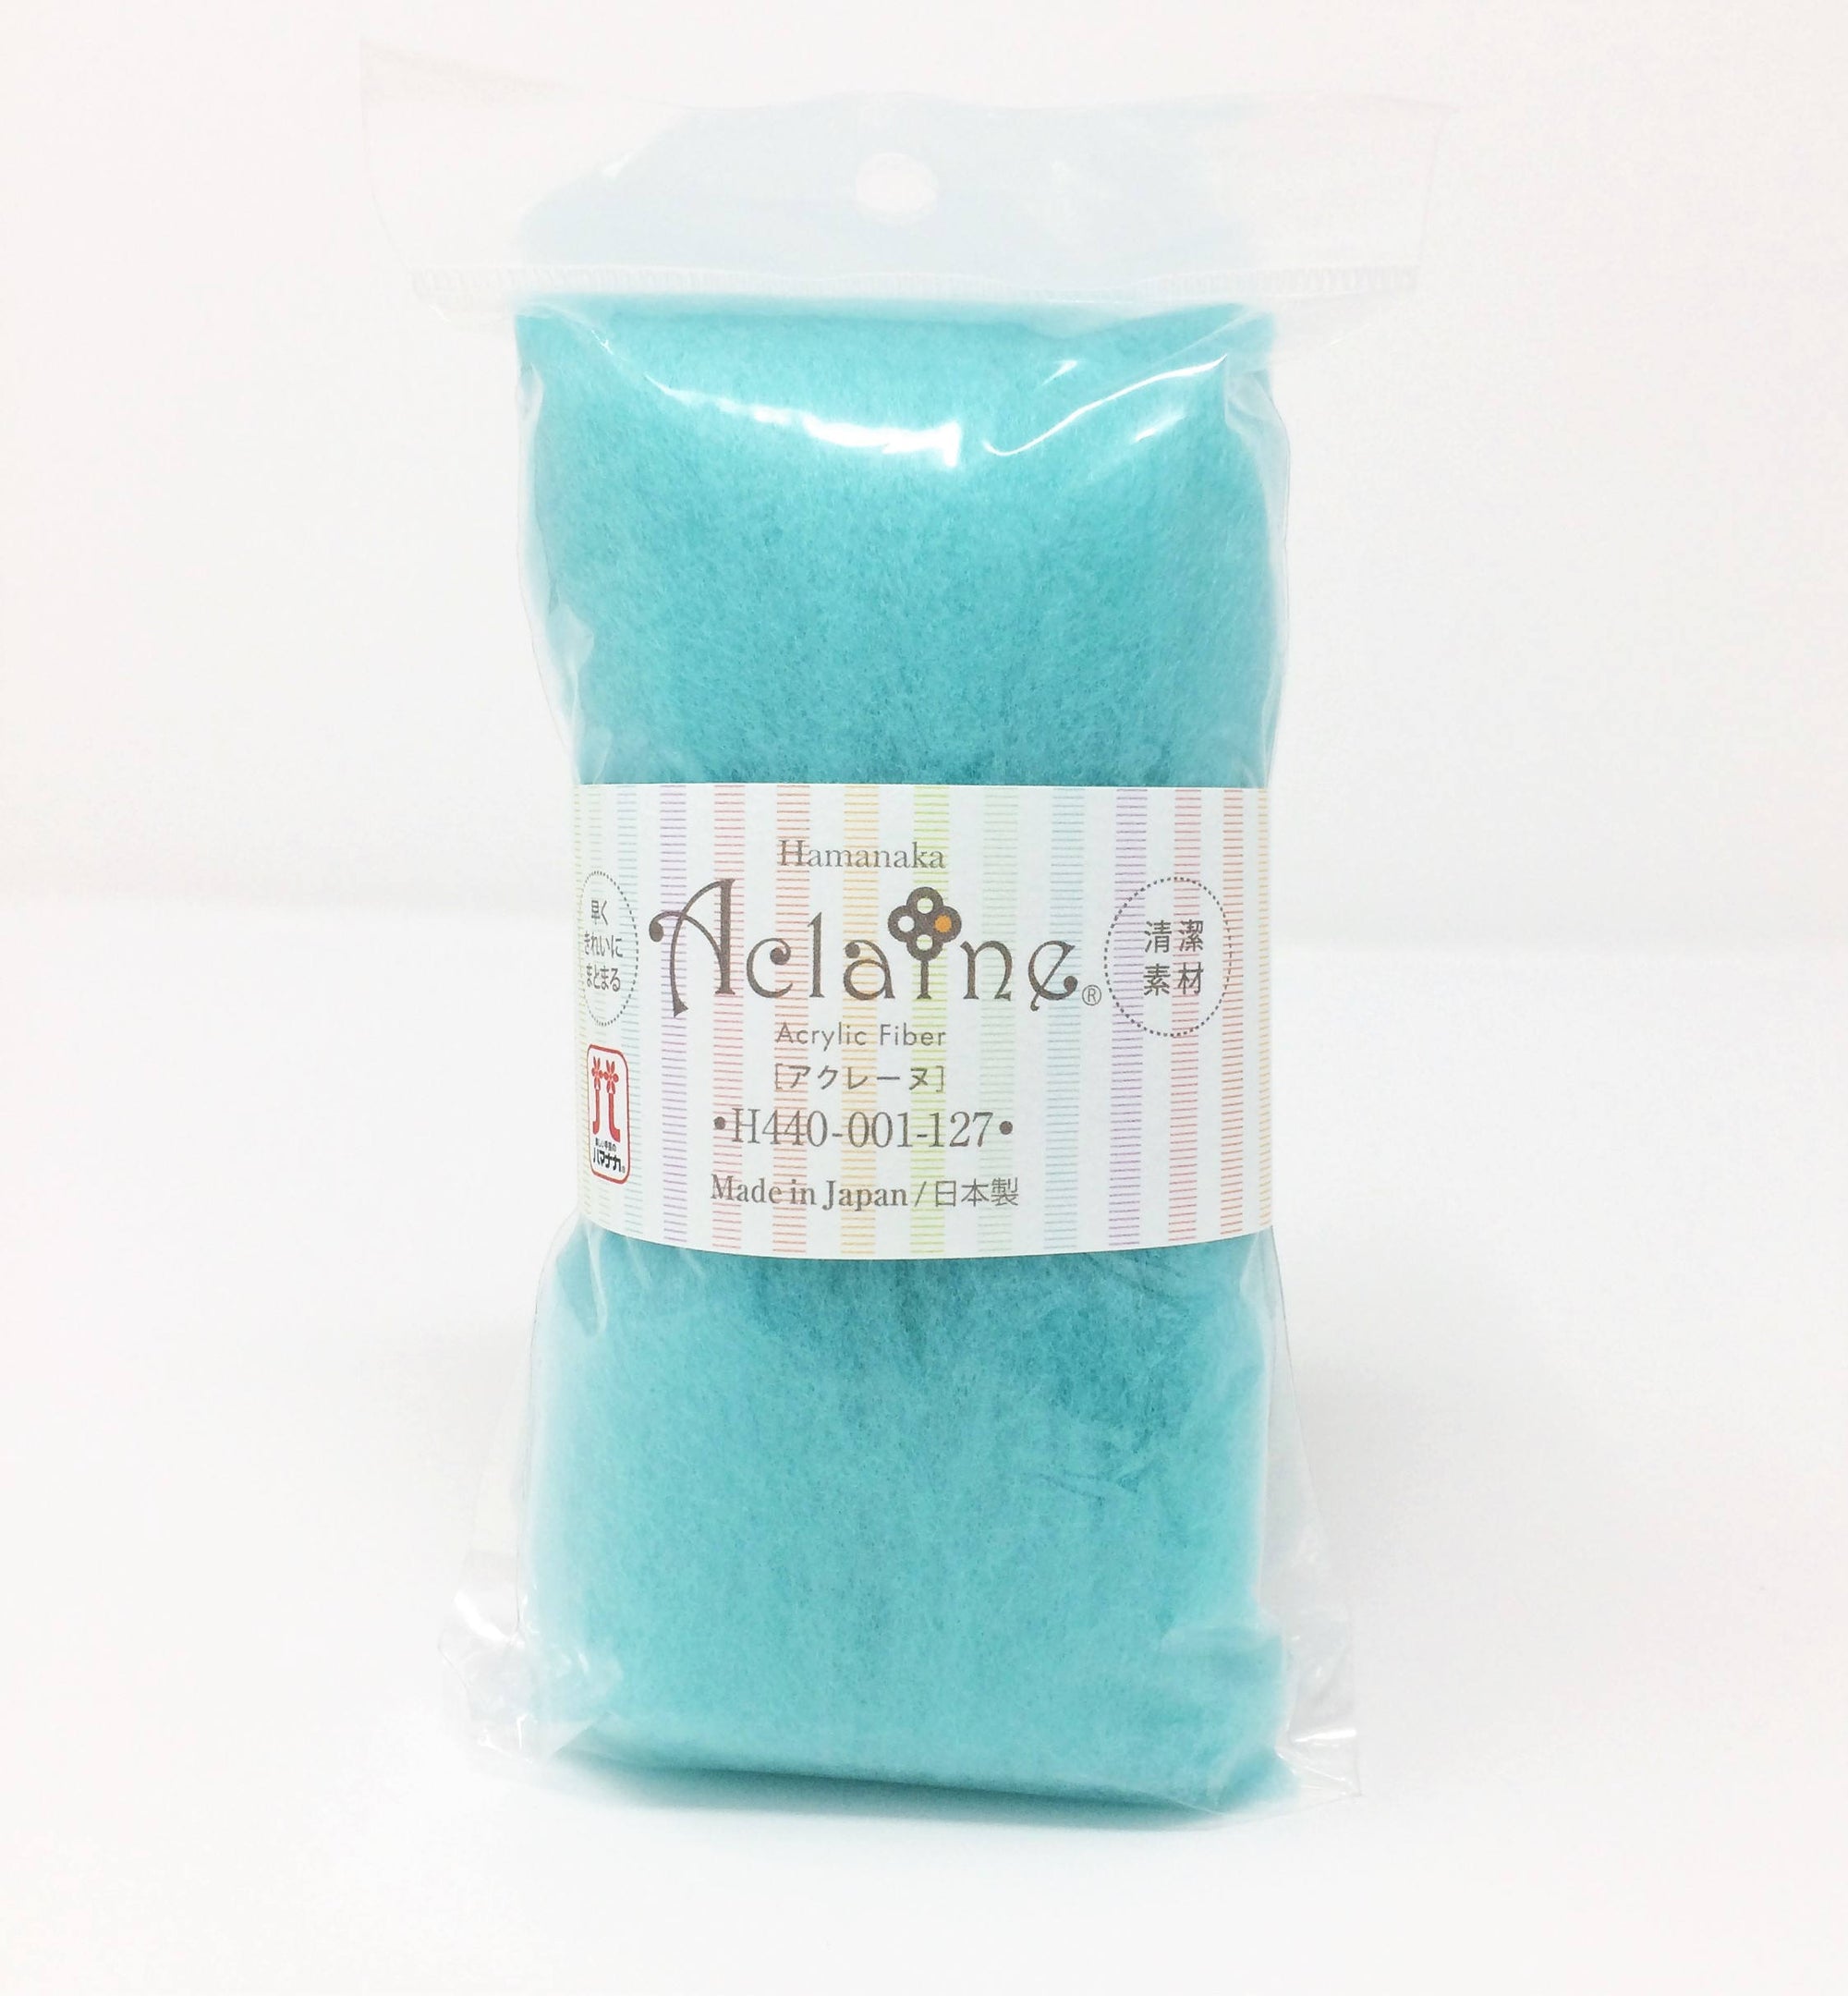 Japanese Hamanaka Aclaine Acrylic Fibre for Needle Felting- 15g pack - Turquoise (#127)